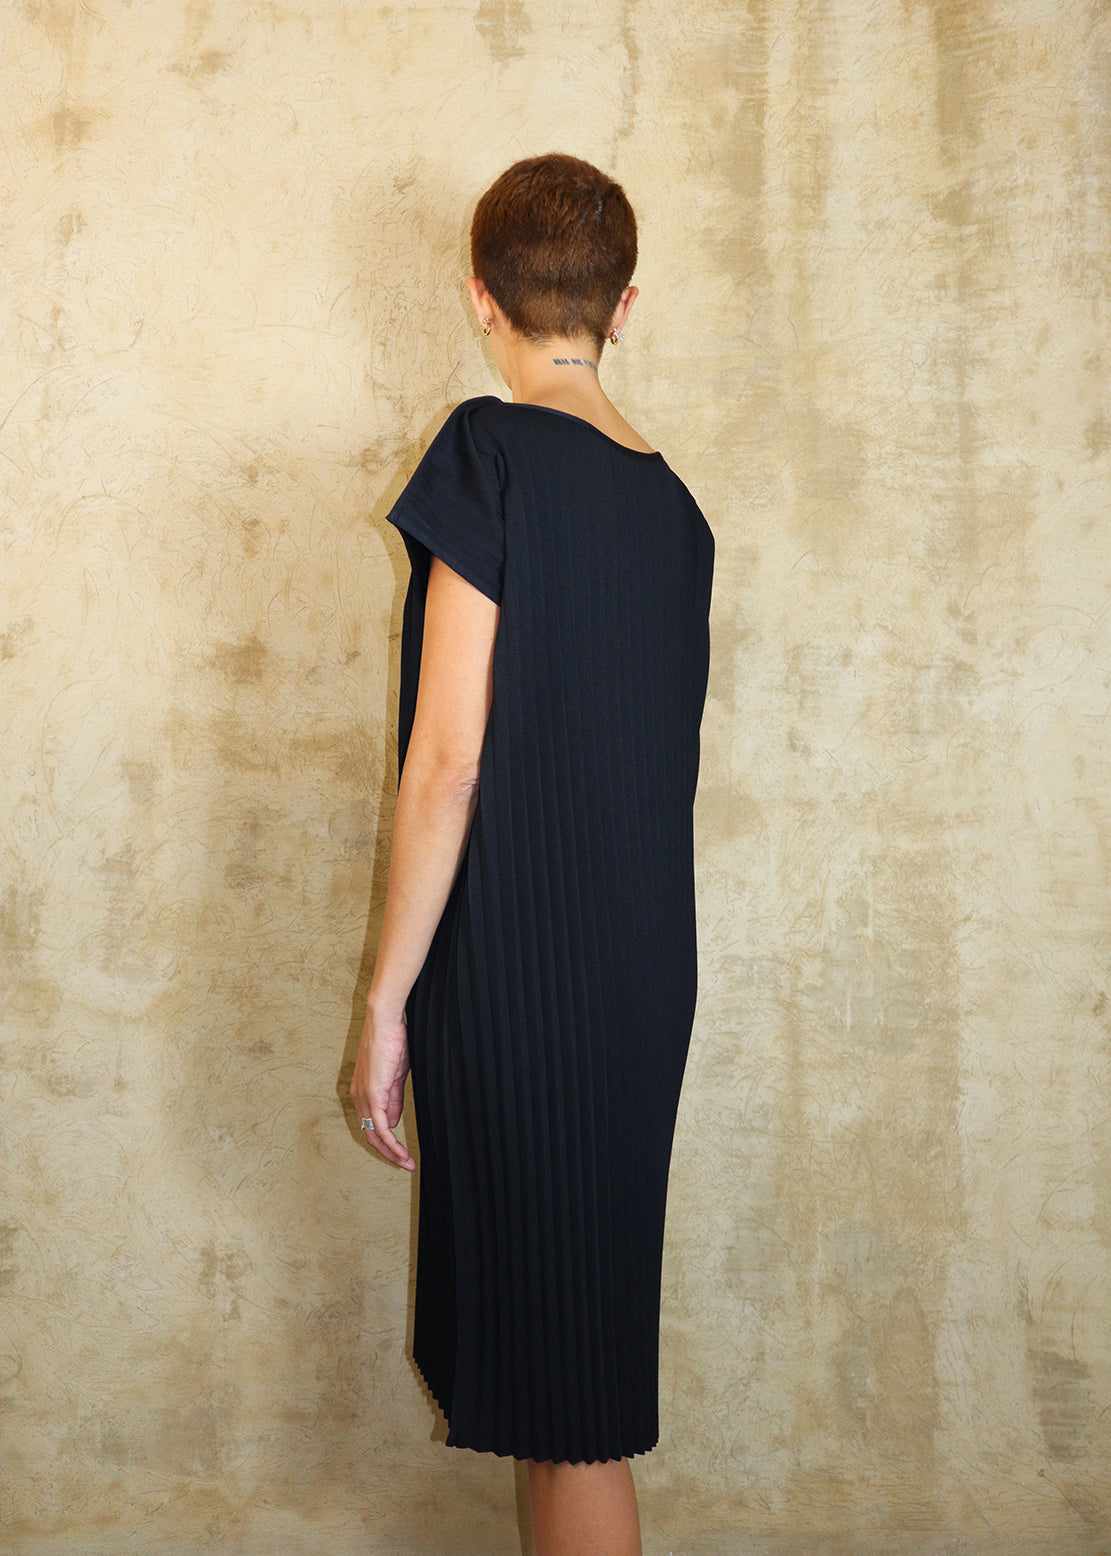 Mott Dress - Black Pleats